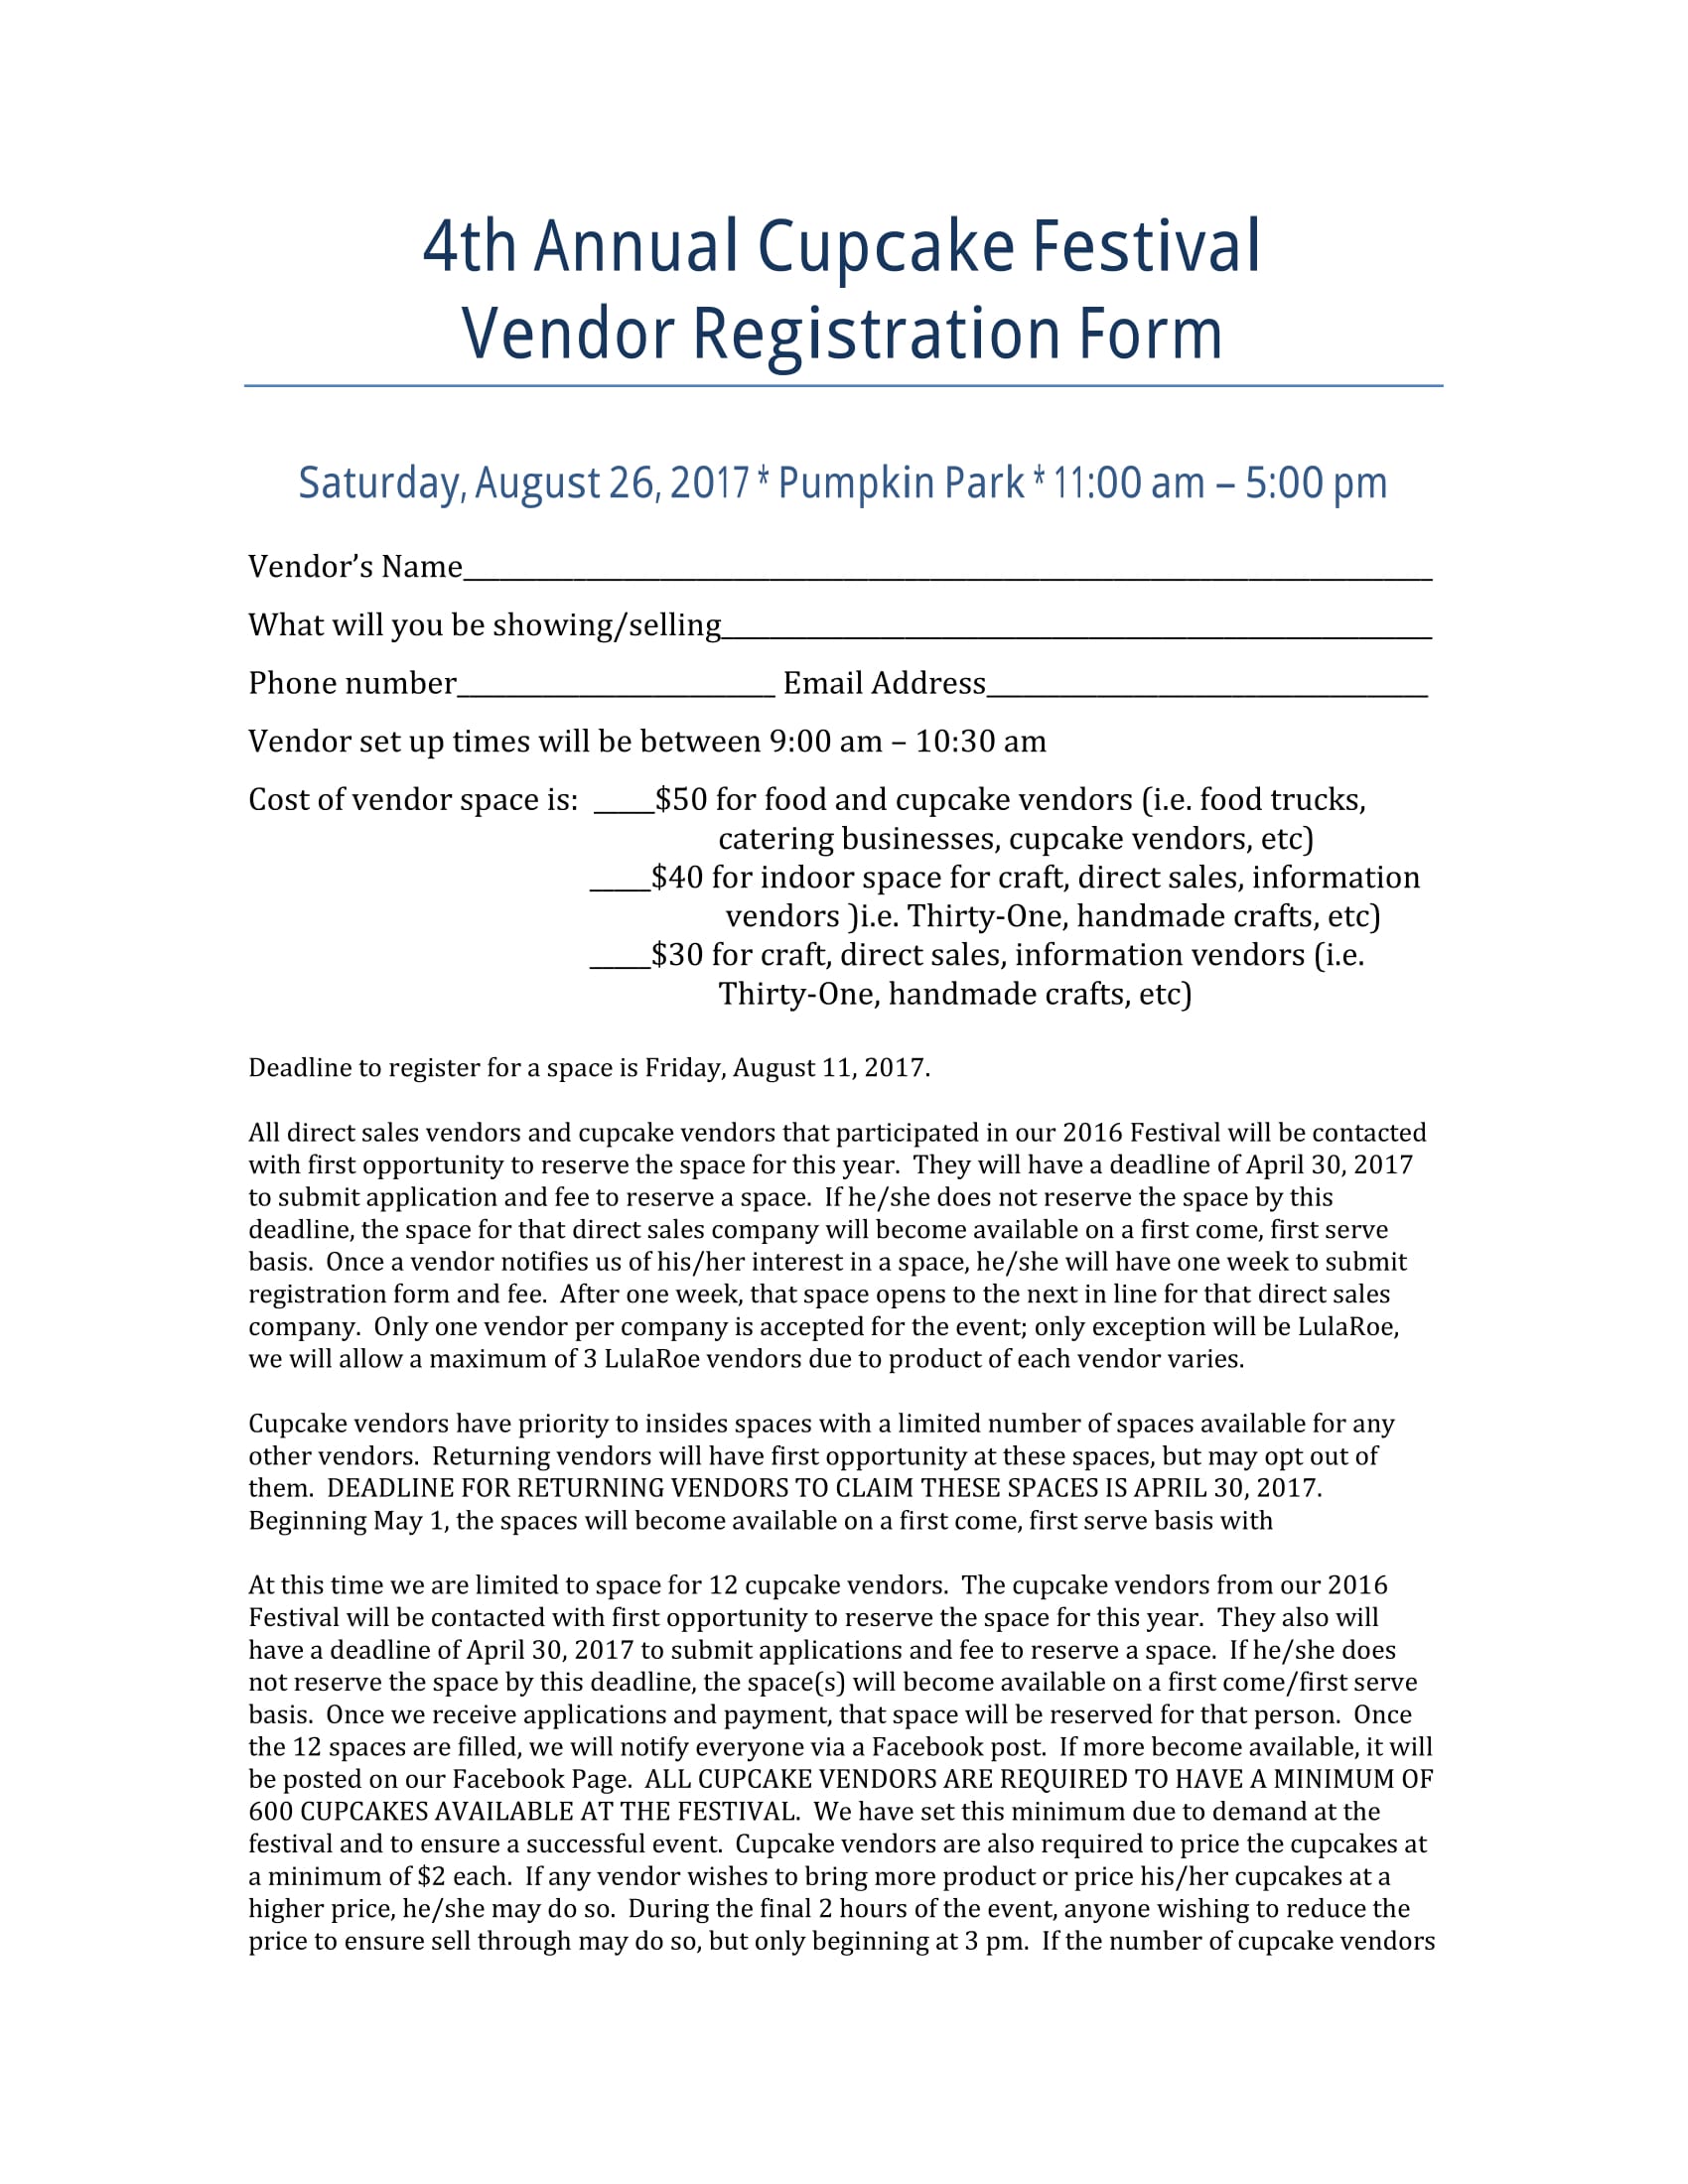 cupcake fest event vendor registration form 1